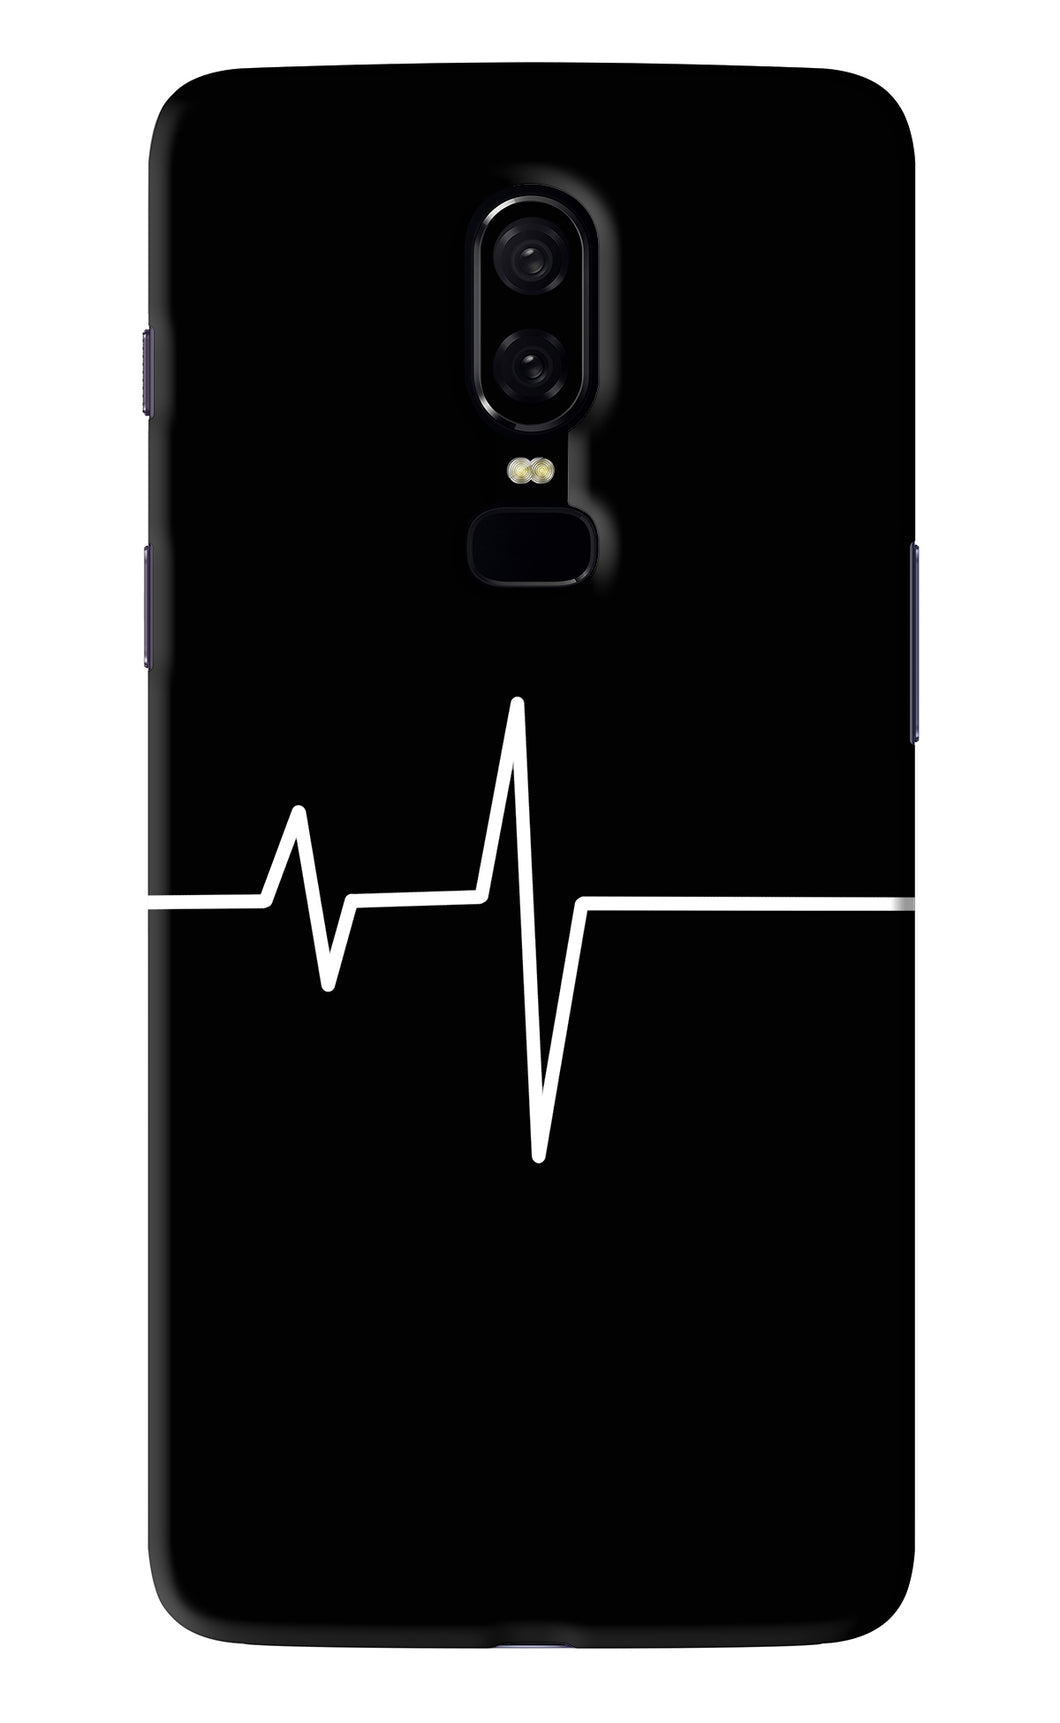 Heart Beats OnePlus 6 Back Skin Wrap